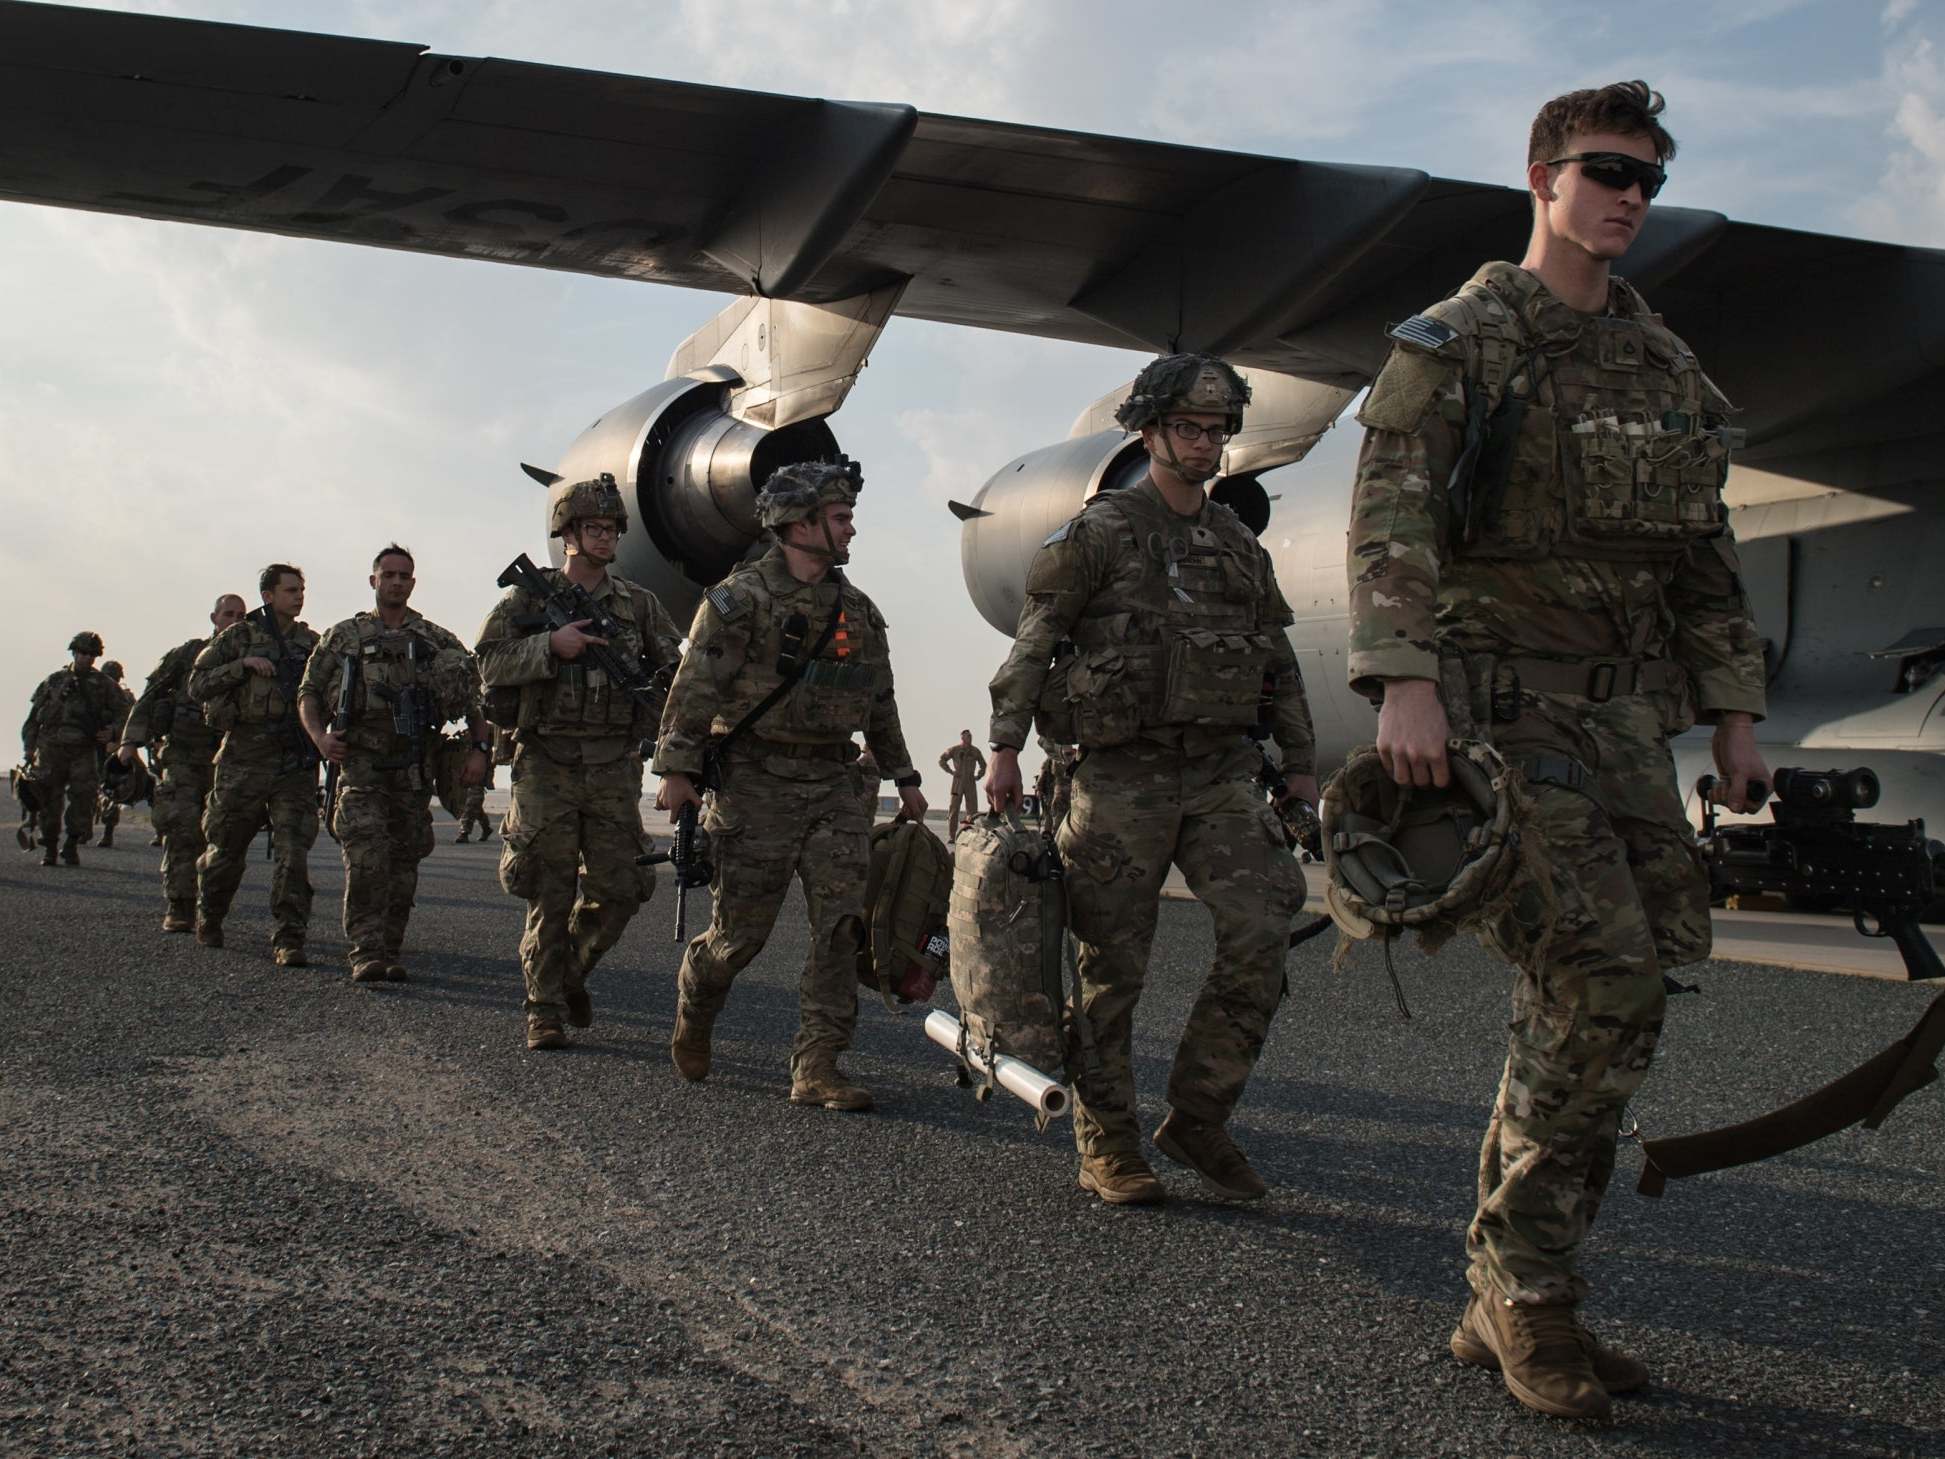 Les Etats-Unis se préparent à déployer 3.500 soldats supplémentaires au Moyen Orient